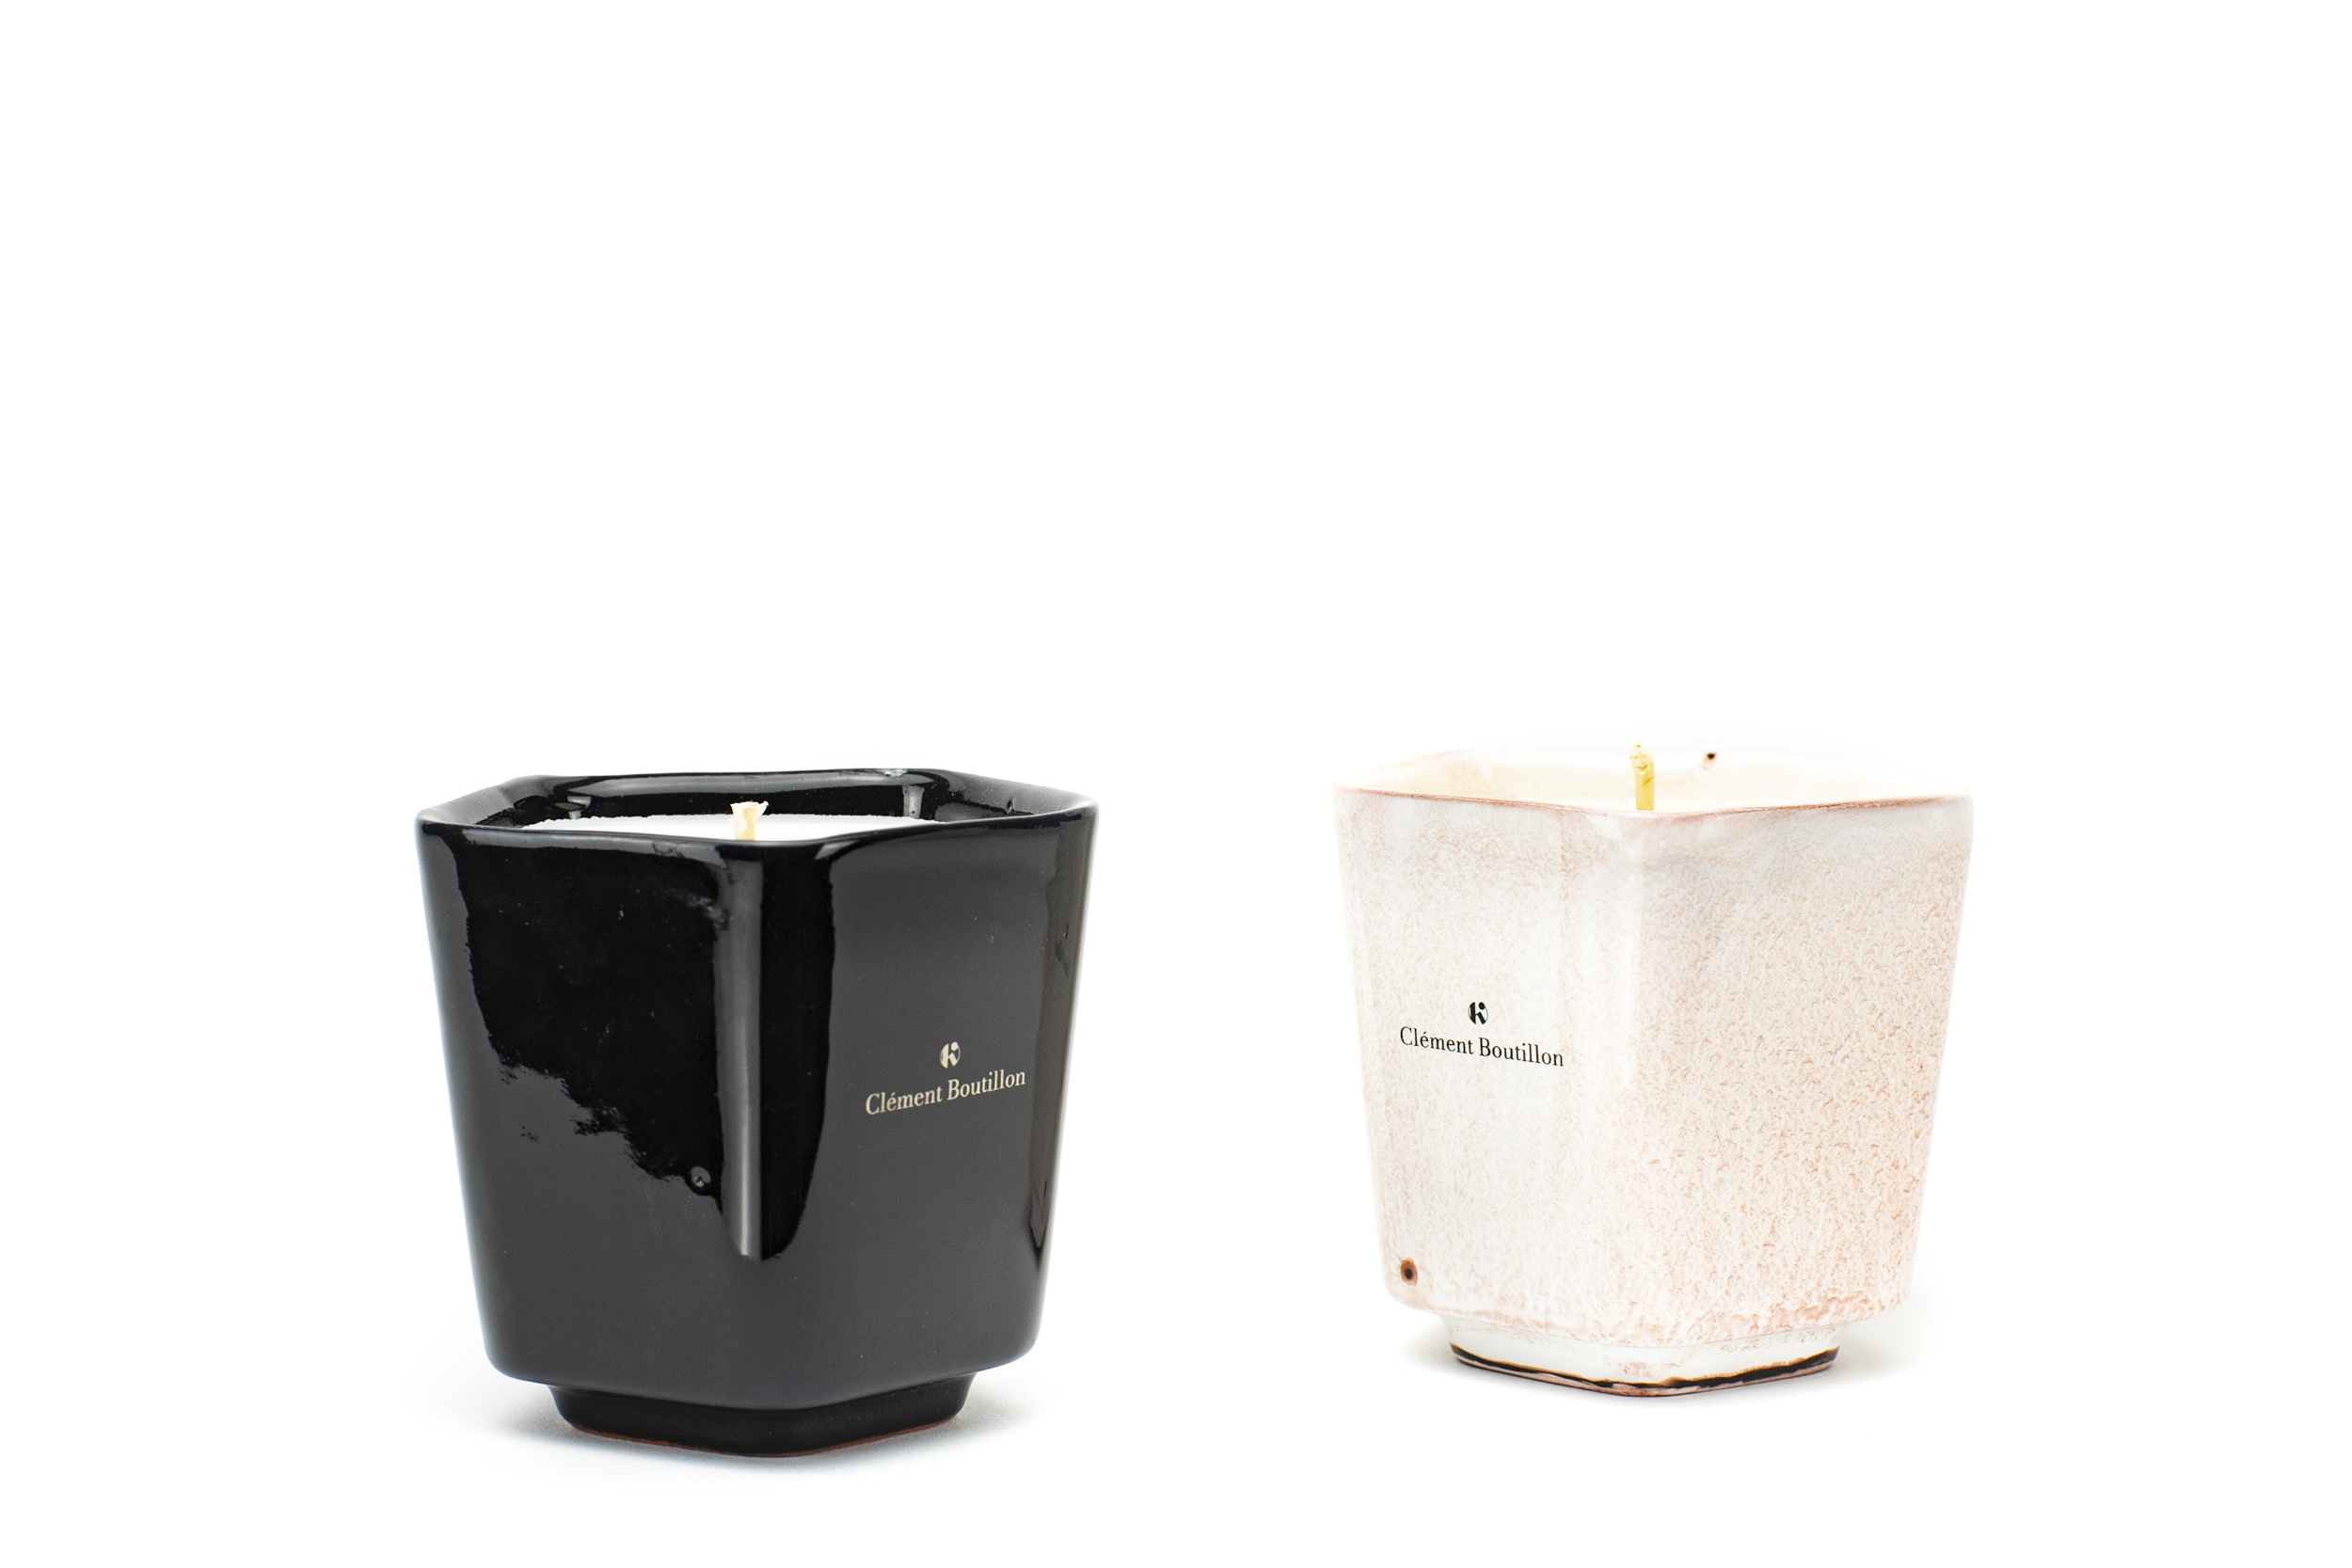 luxury ceramic designer candle